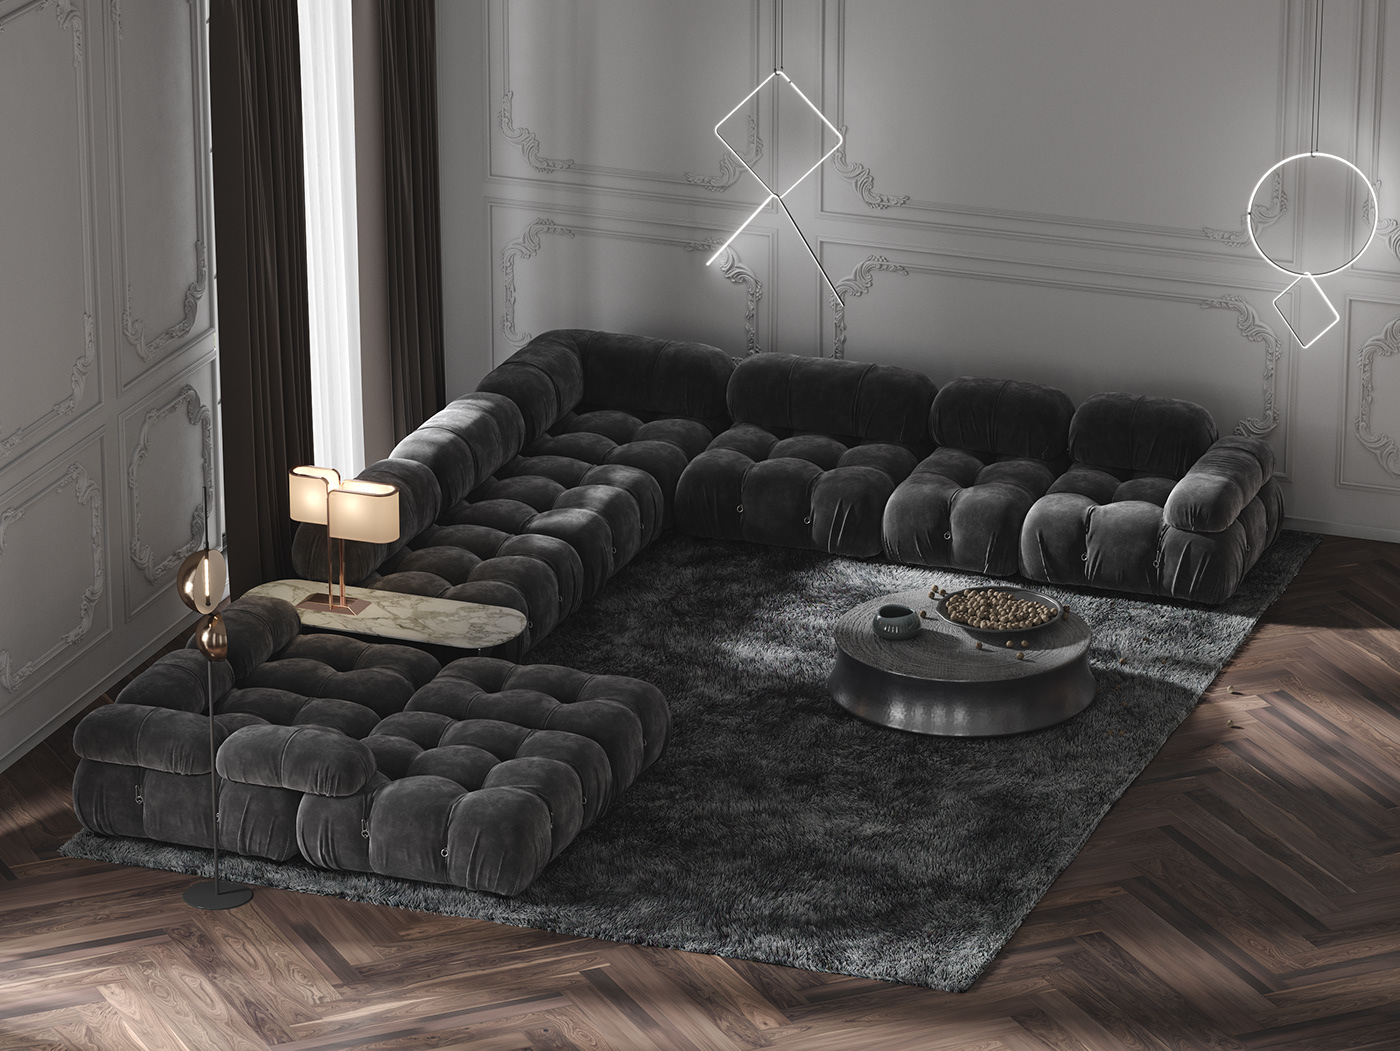 archviz CGI design eclectic furniture home house Interior interior design  living room